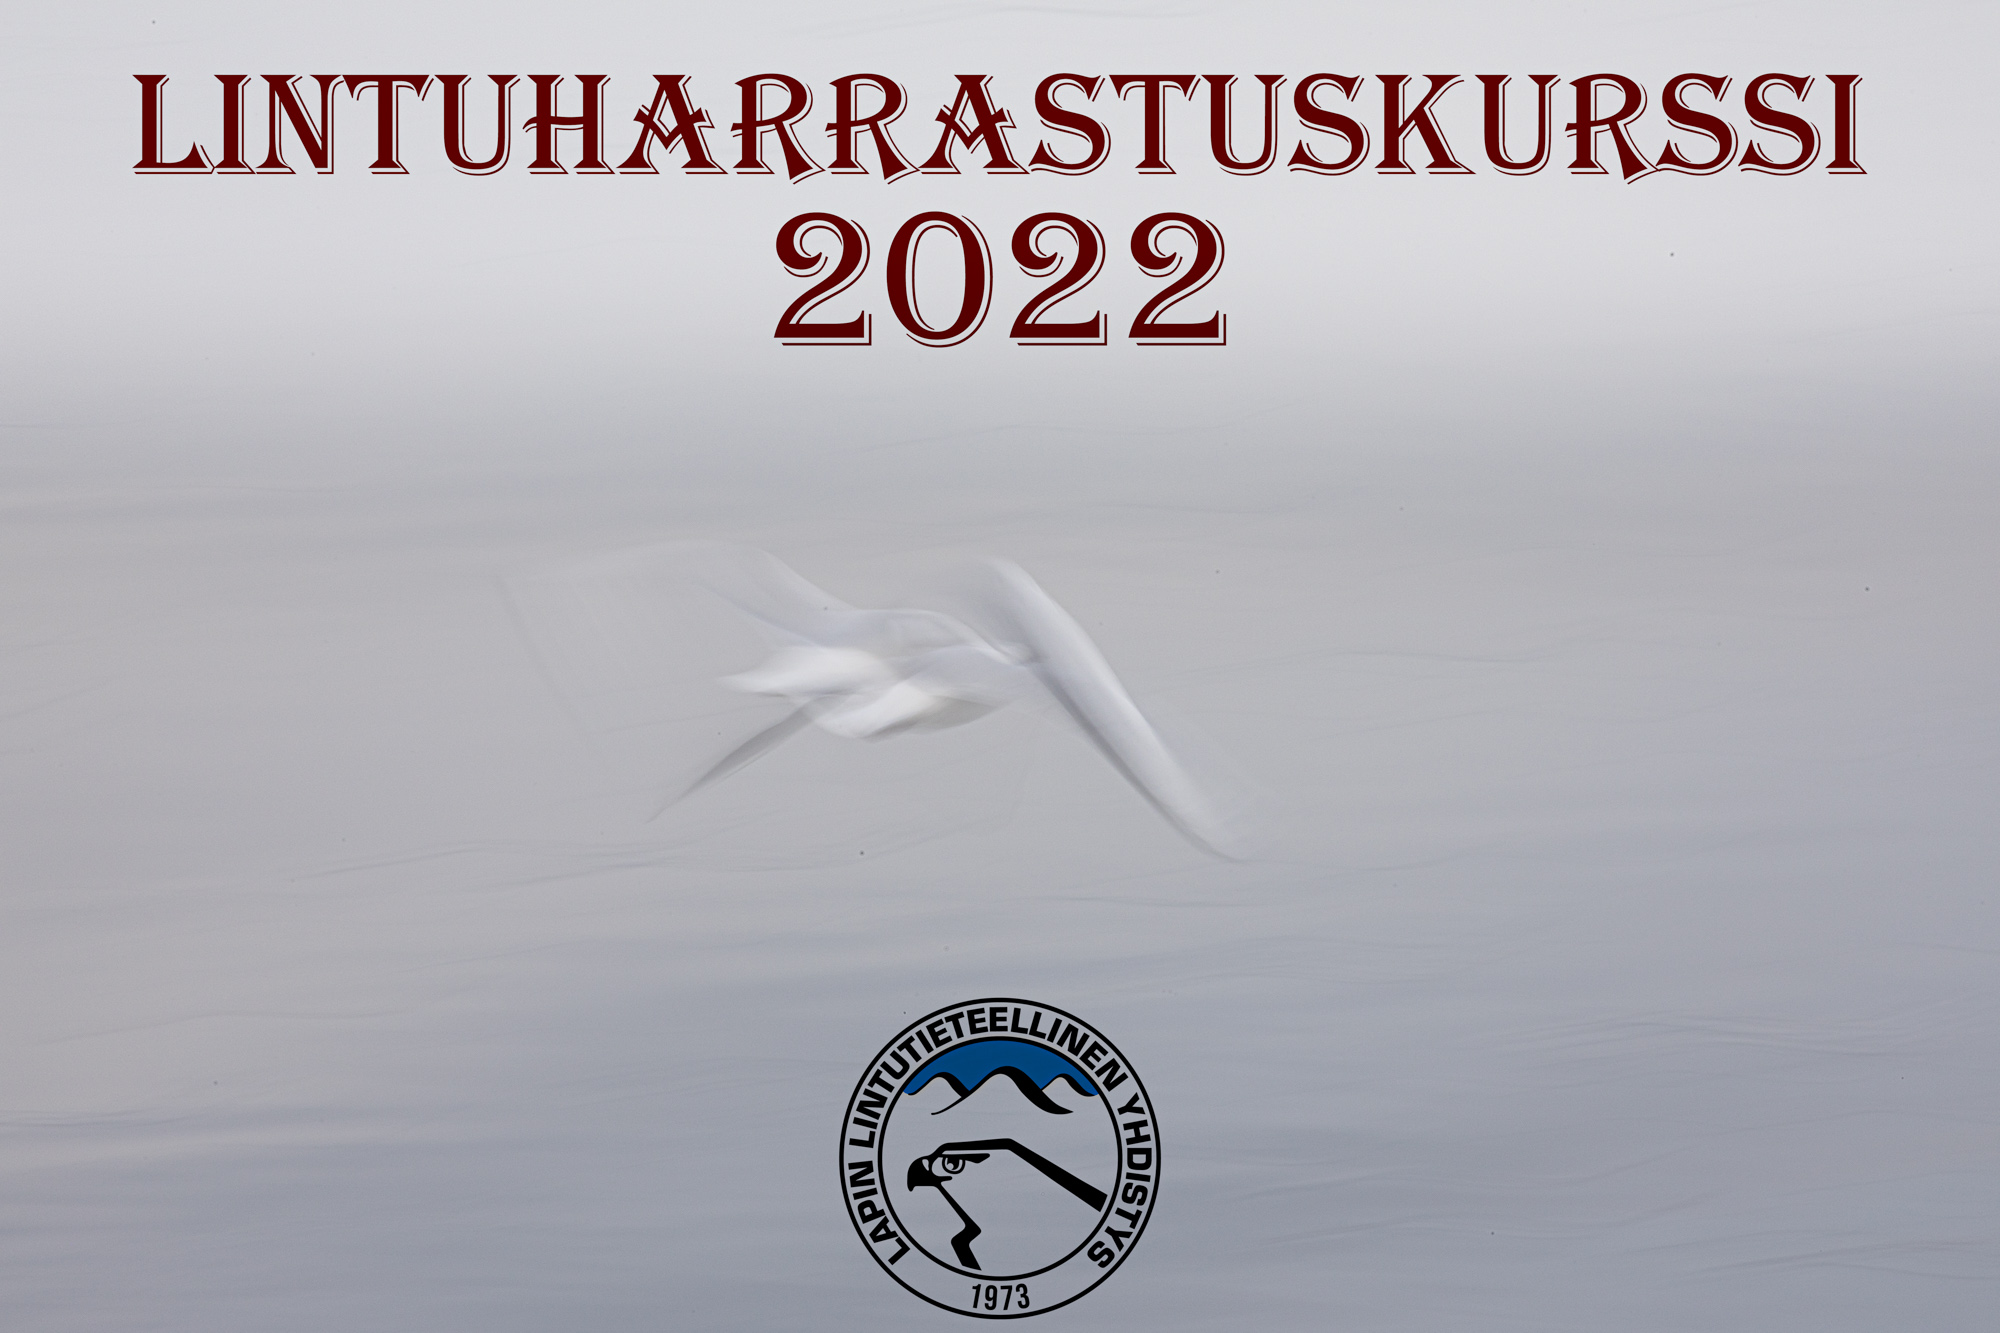 Lintuharrastuskurssi 2022 – Lapin lintutieteellinen yhdistys ry